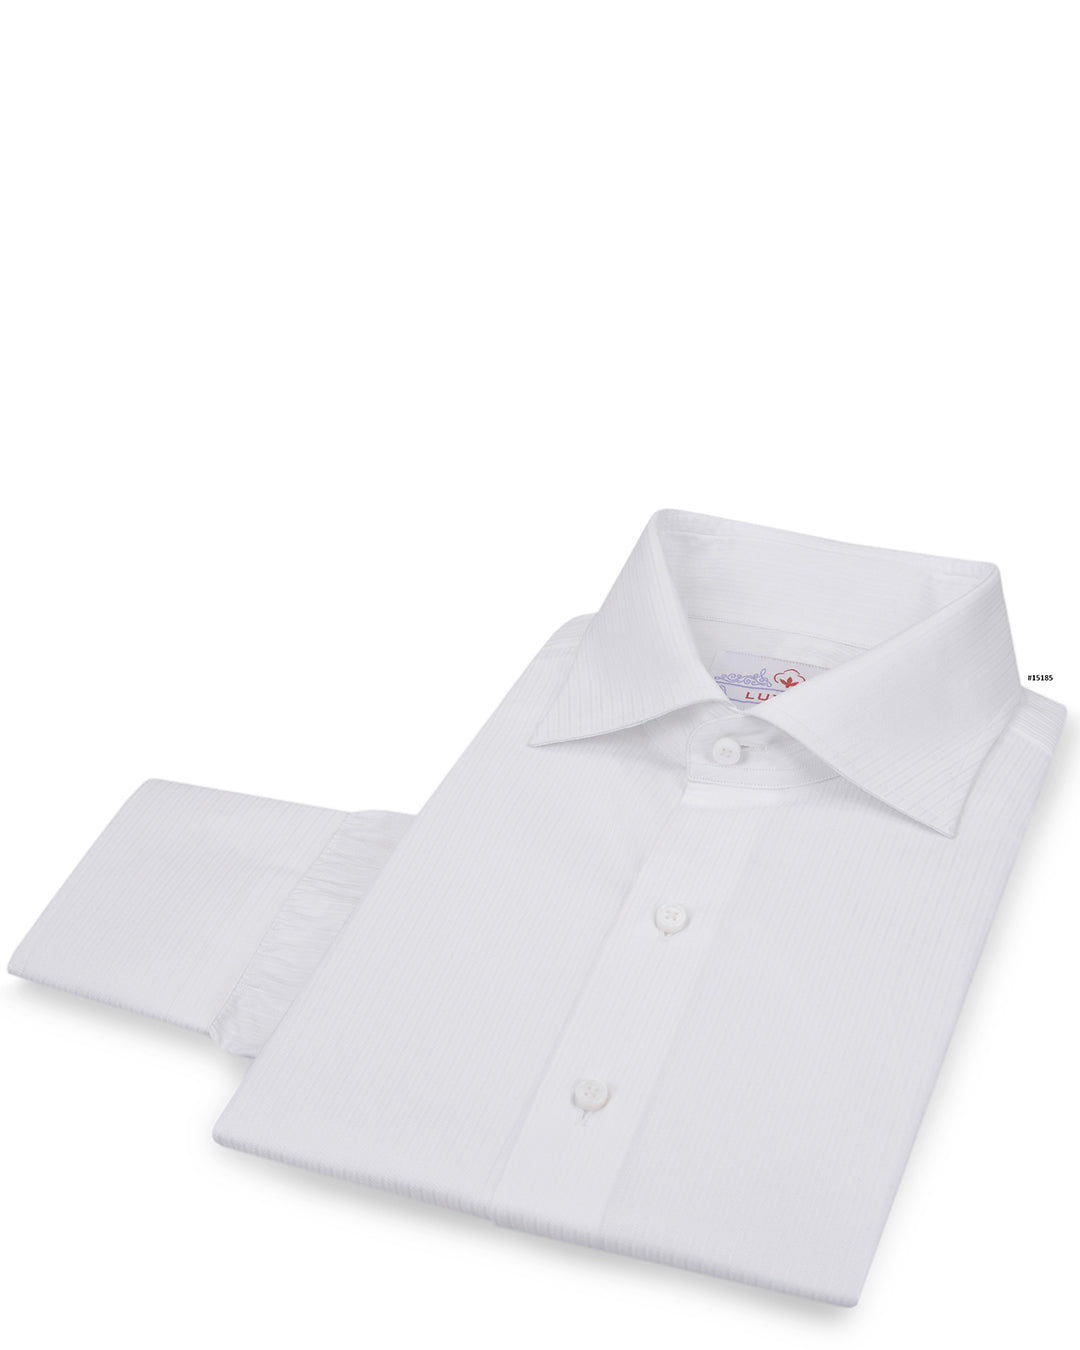 Business Shirt: White Micro Herringbone